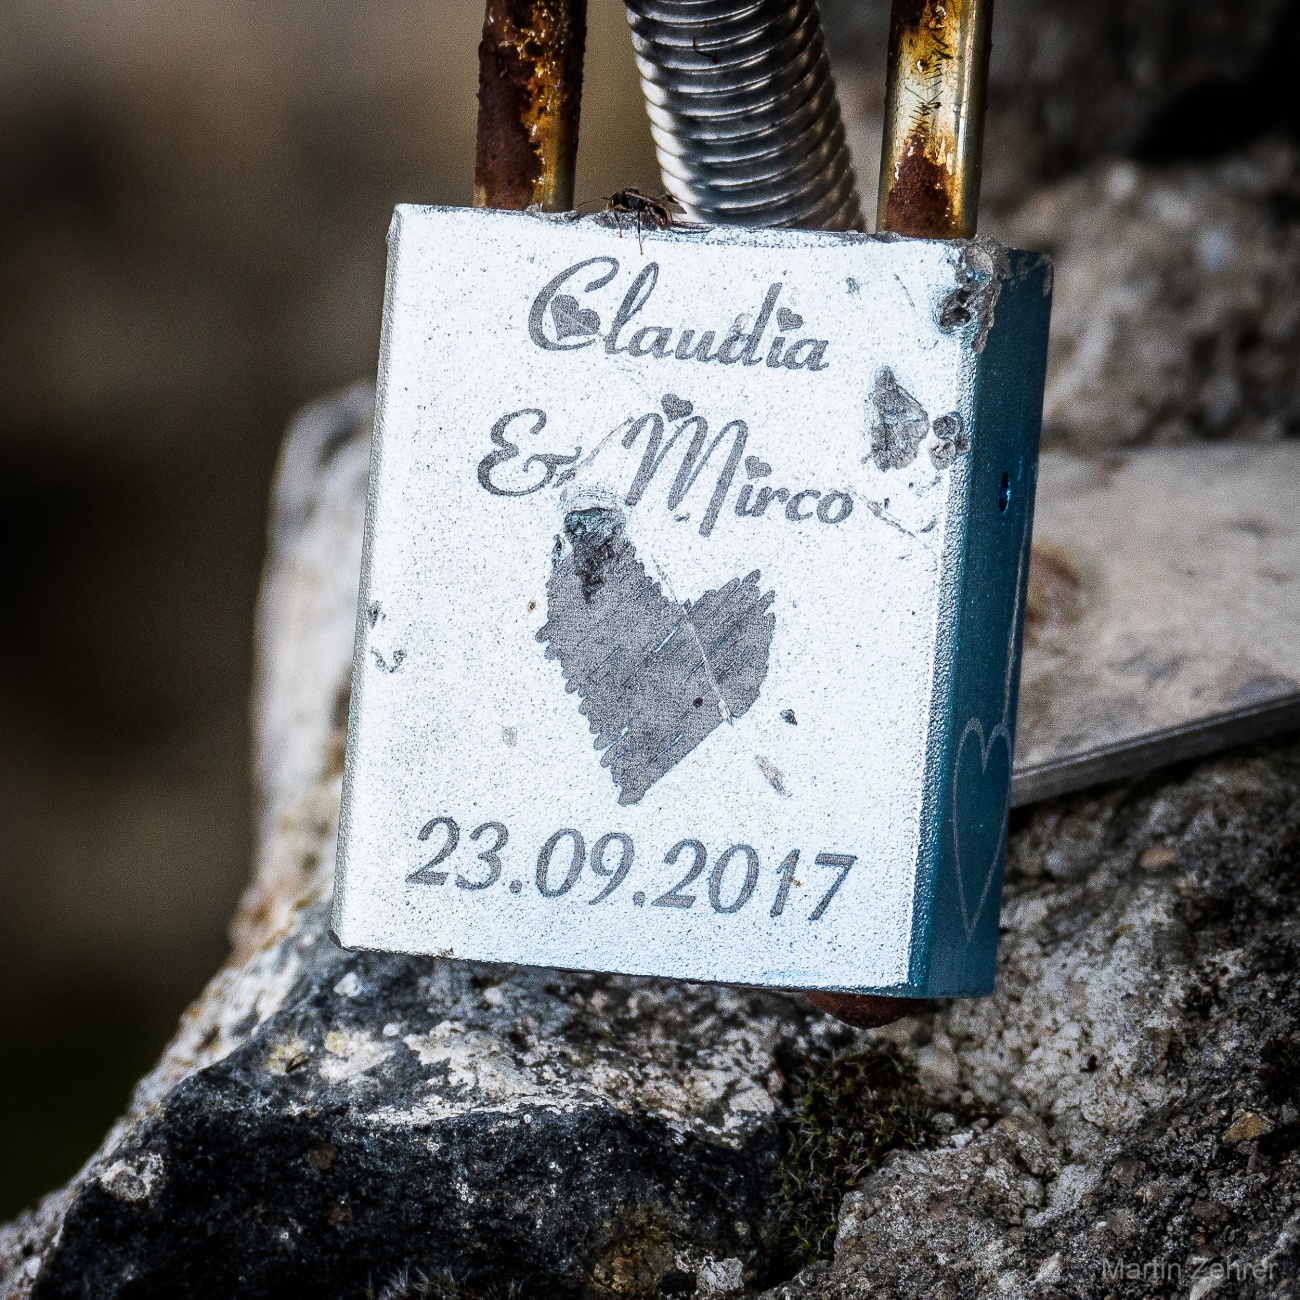 Foto: Martin Zehrer - Claudia und Mirco - Liebes-Schloß von 2017 oben, auf dem Schlossberg... ;-) 